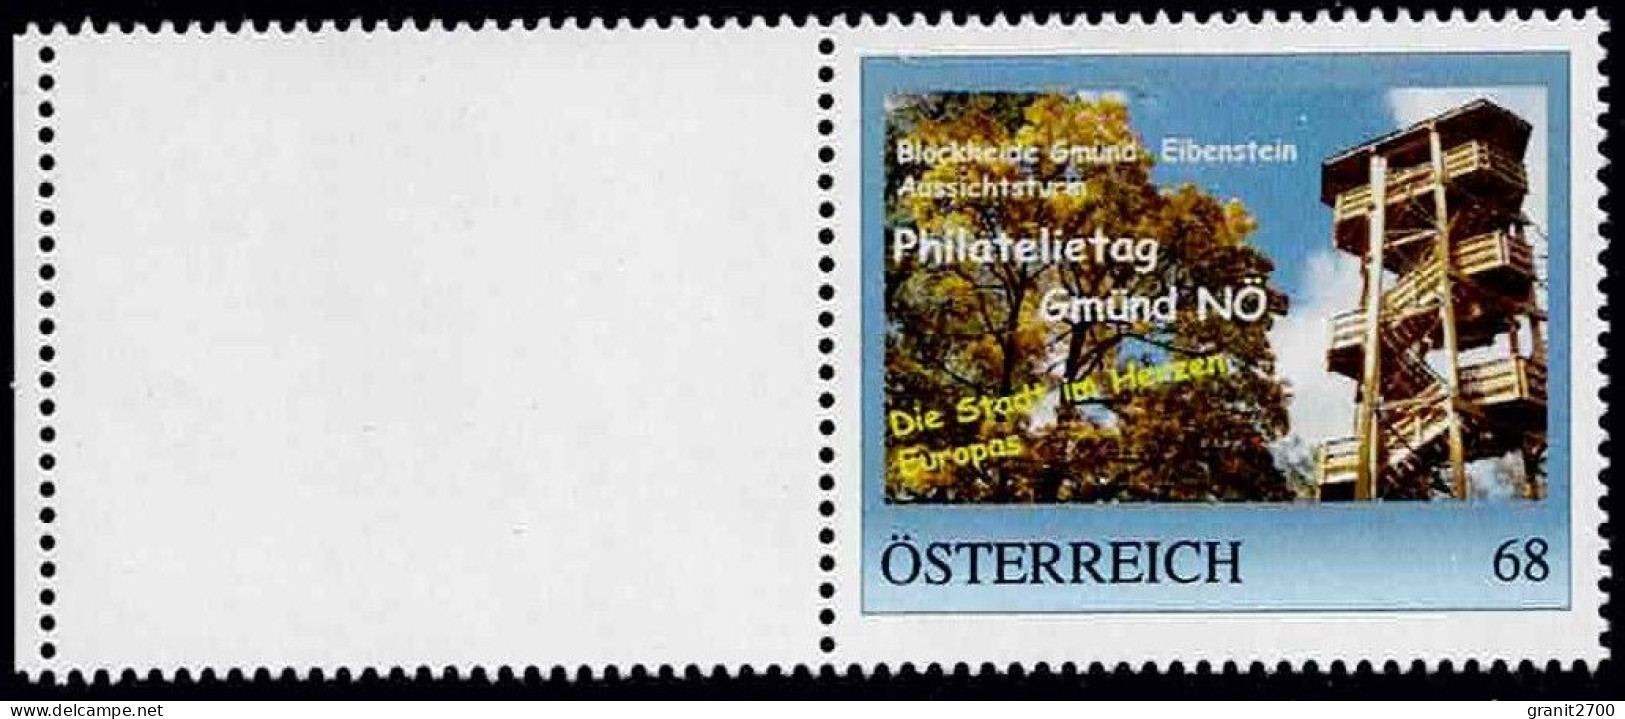 PM  Philatelietag Gmünd - Die Stadt Im Herzen Europas Ex Bogen Nr.  8126426  Vom 19.4.2018 Postfrisch - Personnalized Stamps